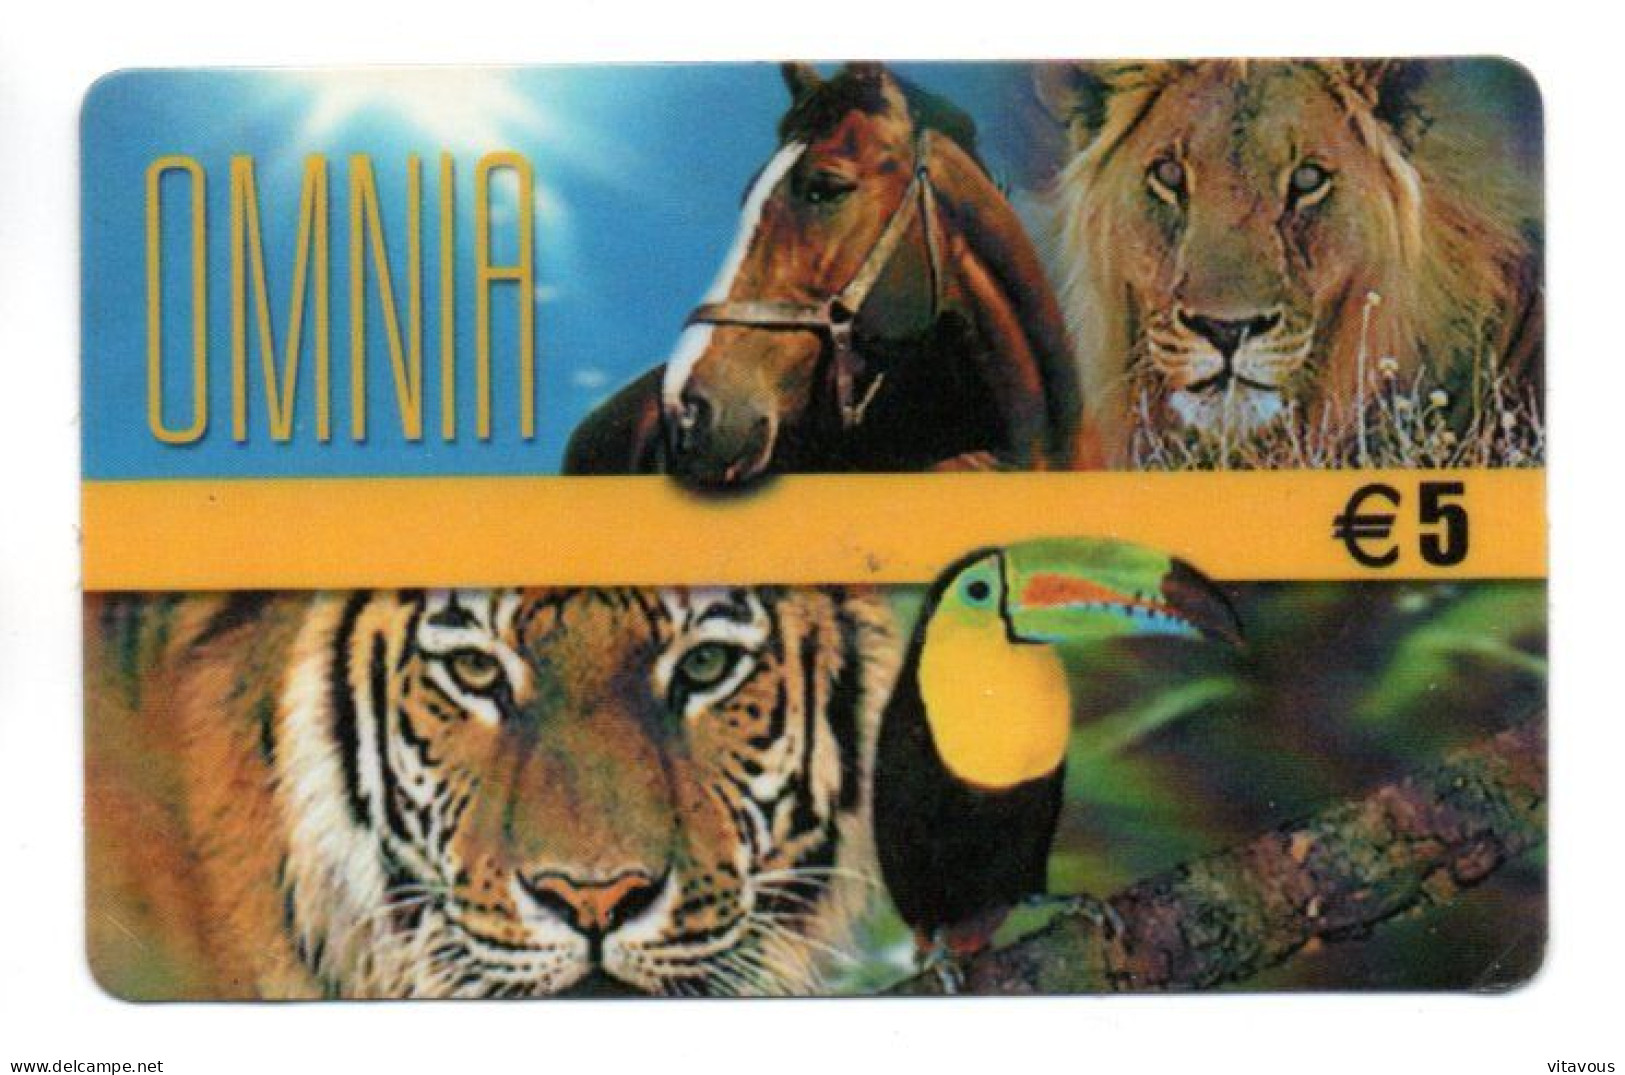 OMNIA Lion Tigre Cheval  Carte Prépayée Italie Card  Karte (K 233) - Cartes GSM Prépayées & Recharges